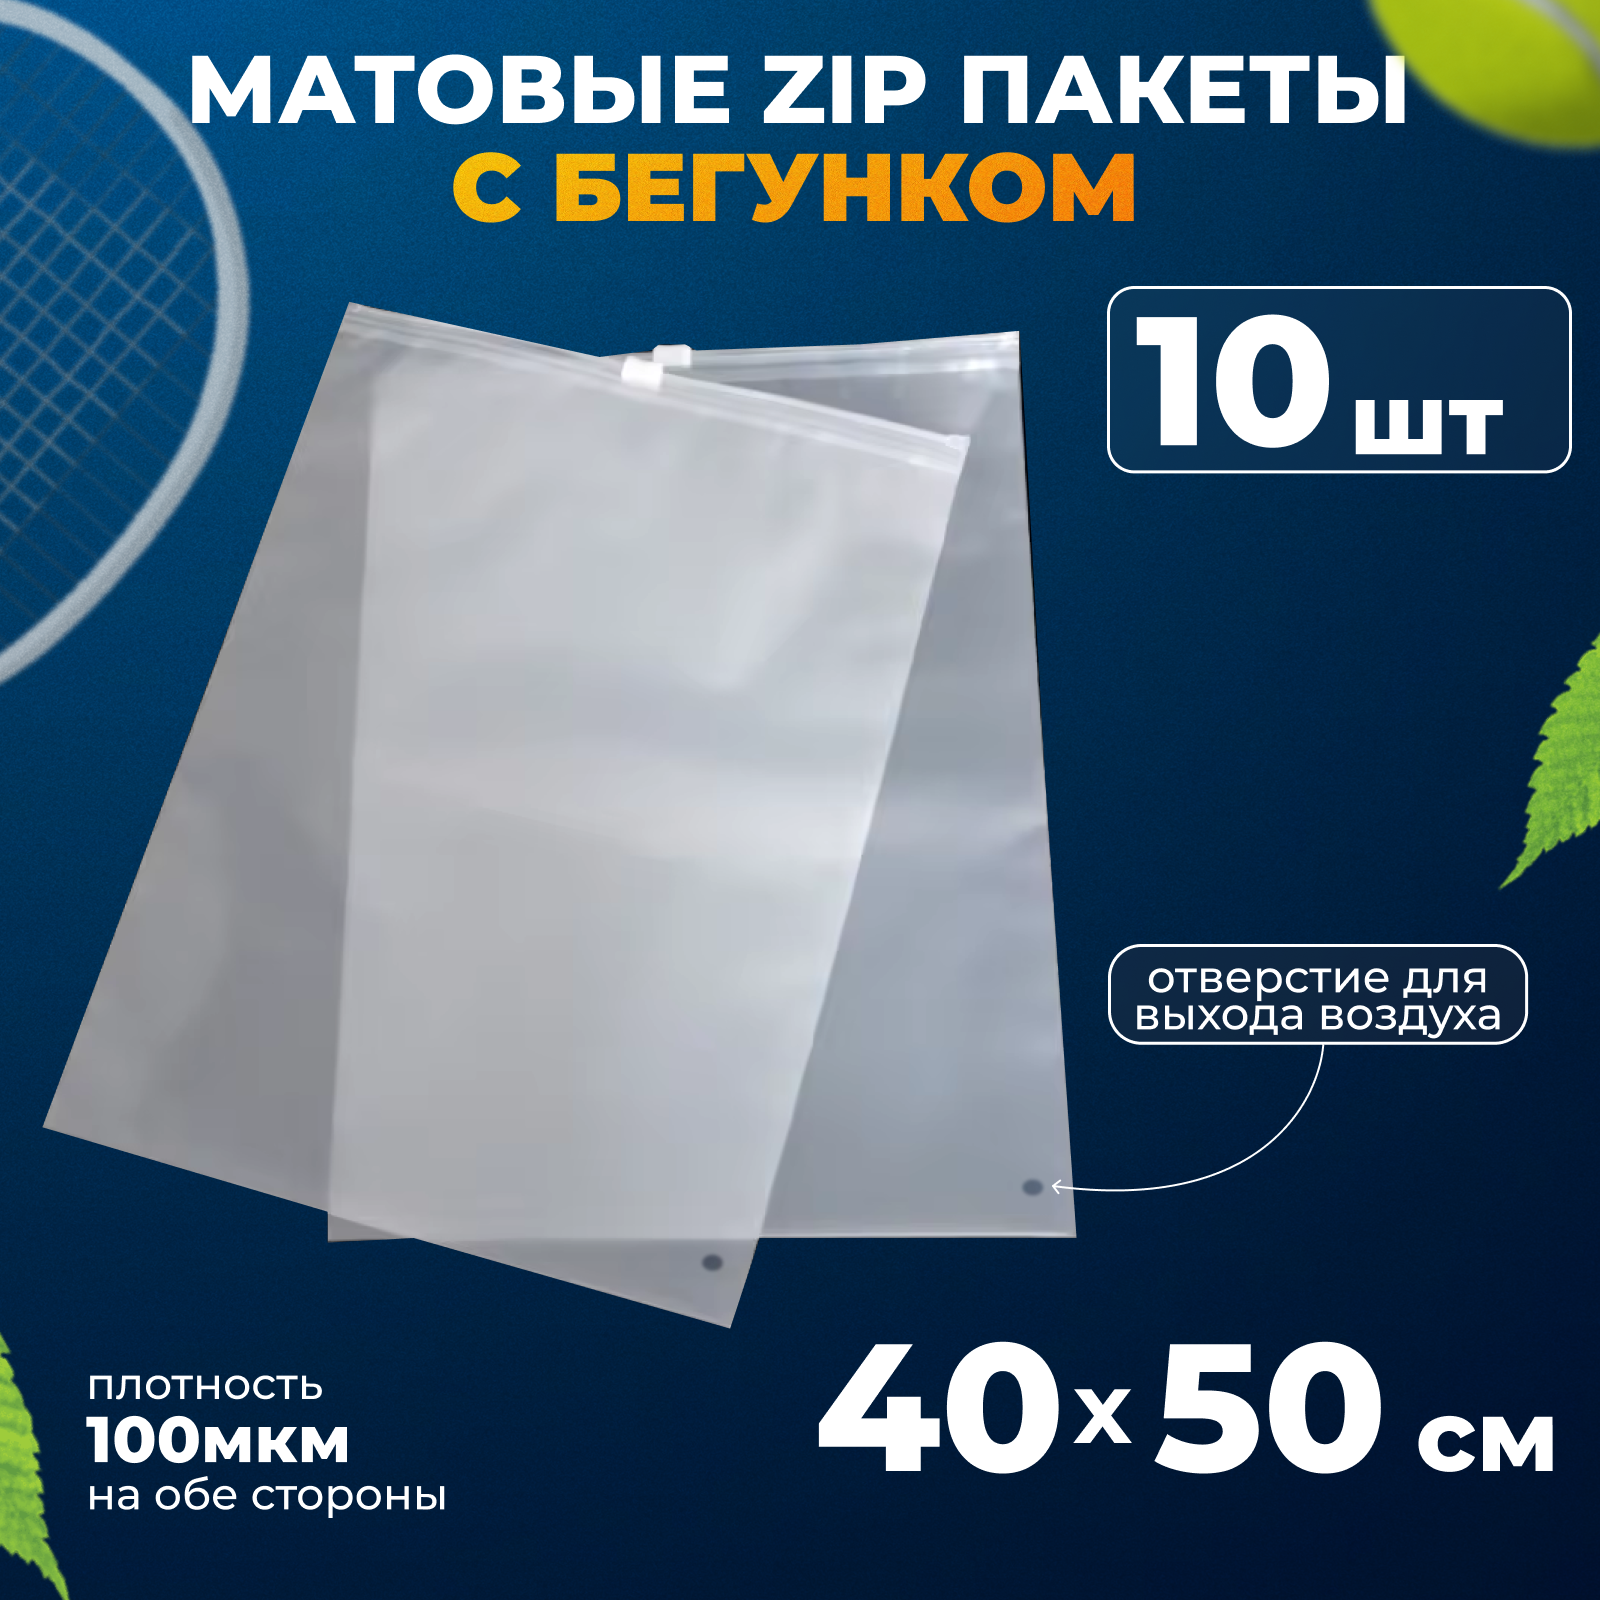 Матовые зип пакеты с бегунком 40х50 см, 10шт